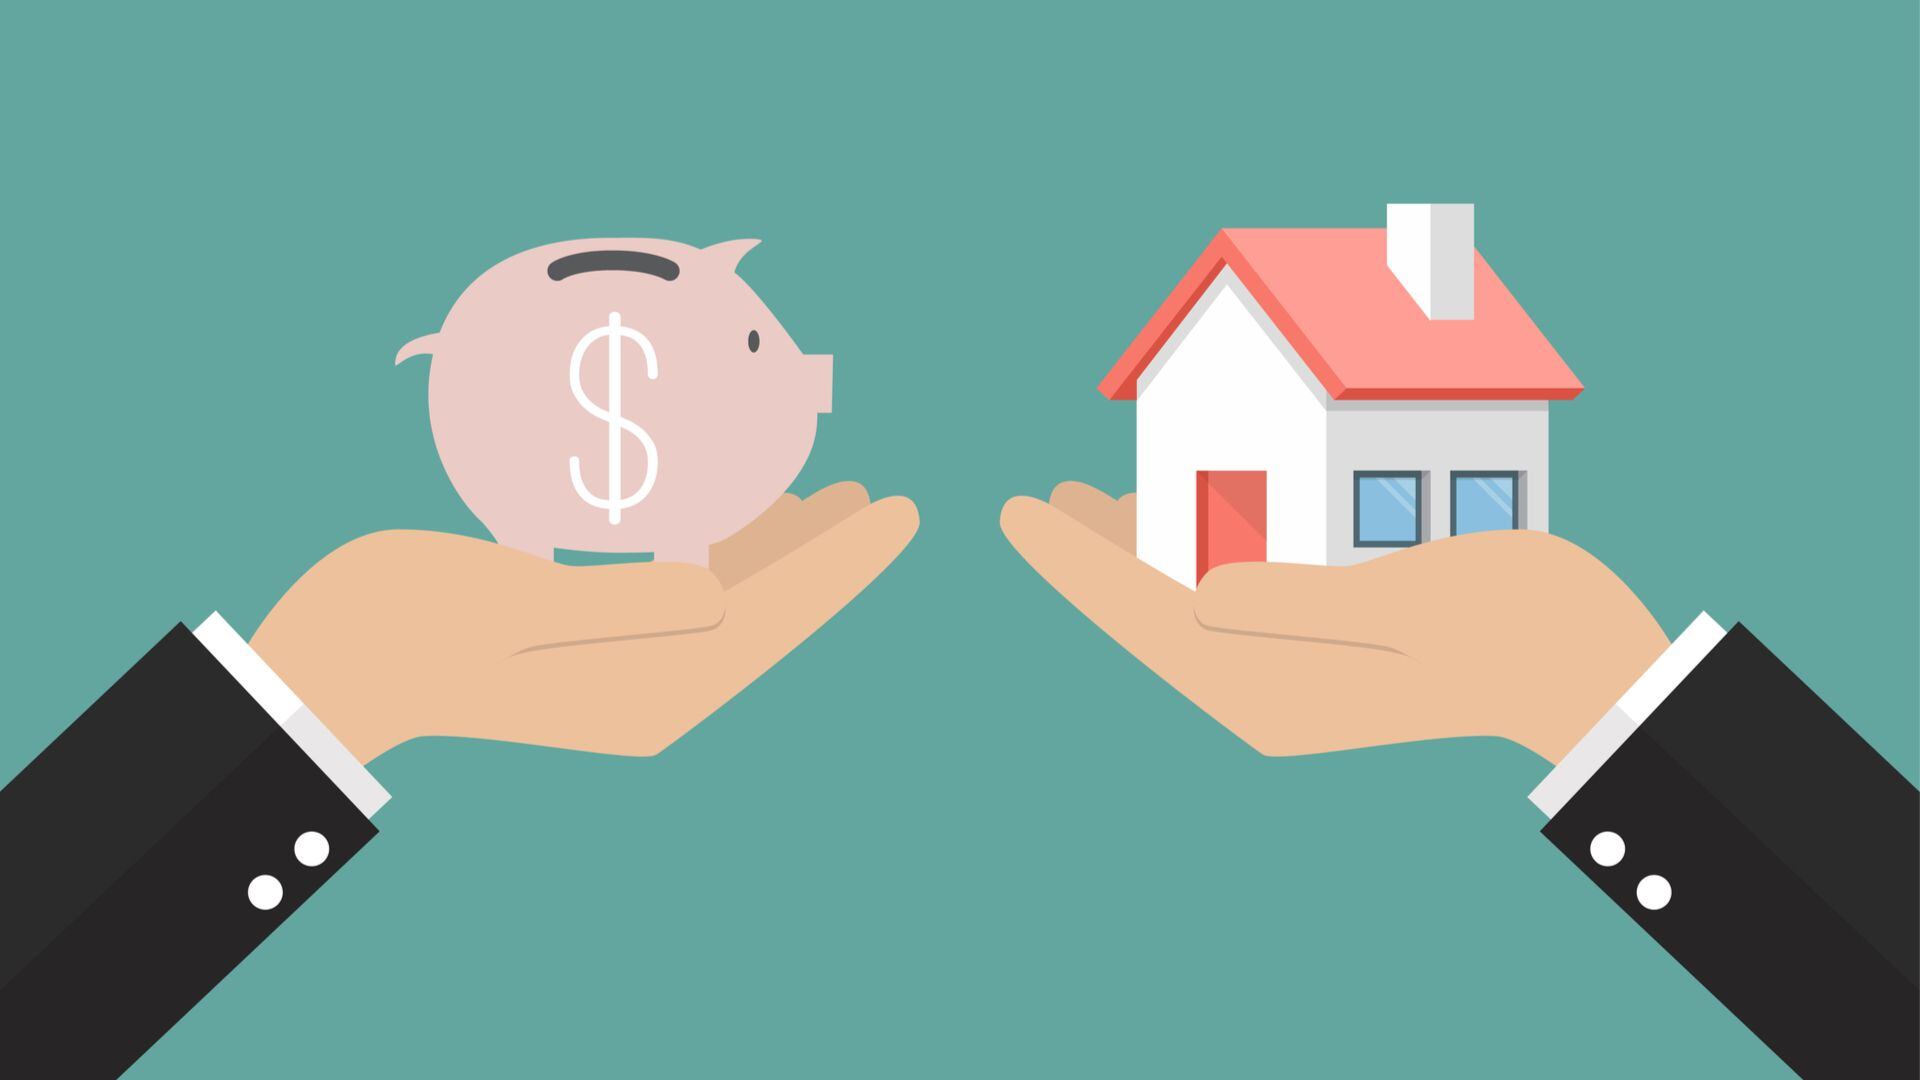 Al estar identificado con el dólar, el mercado inmobiliario ofrece una posibilidad de inversión para los ahorros (Shutterstock)